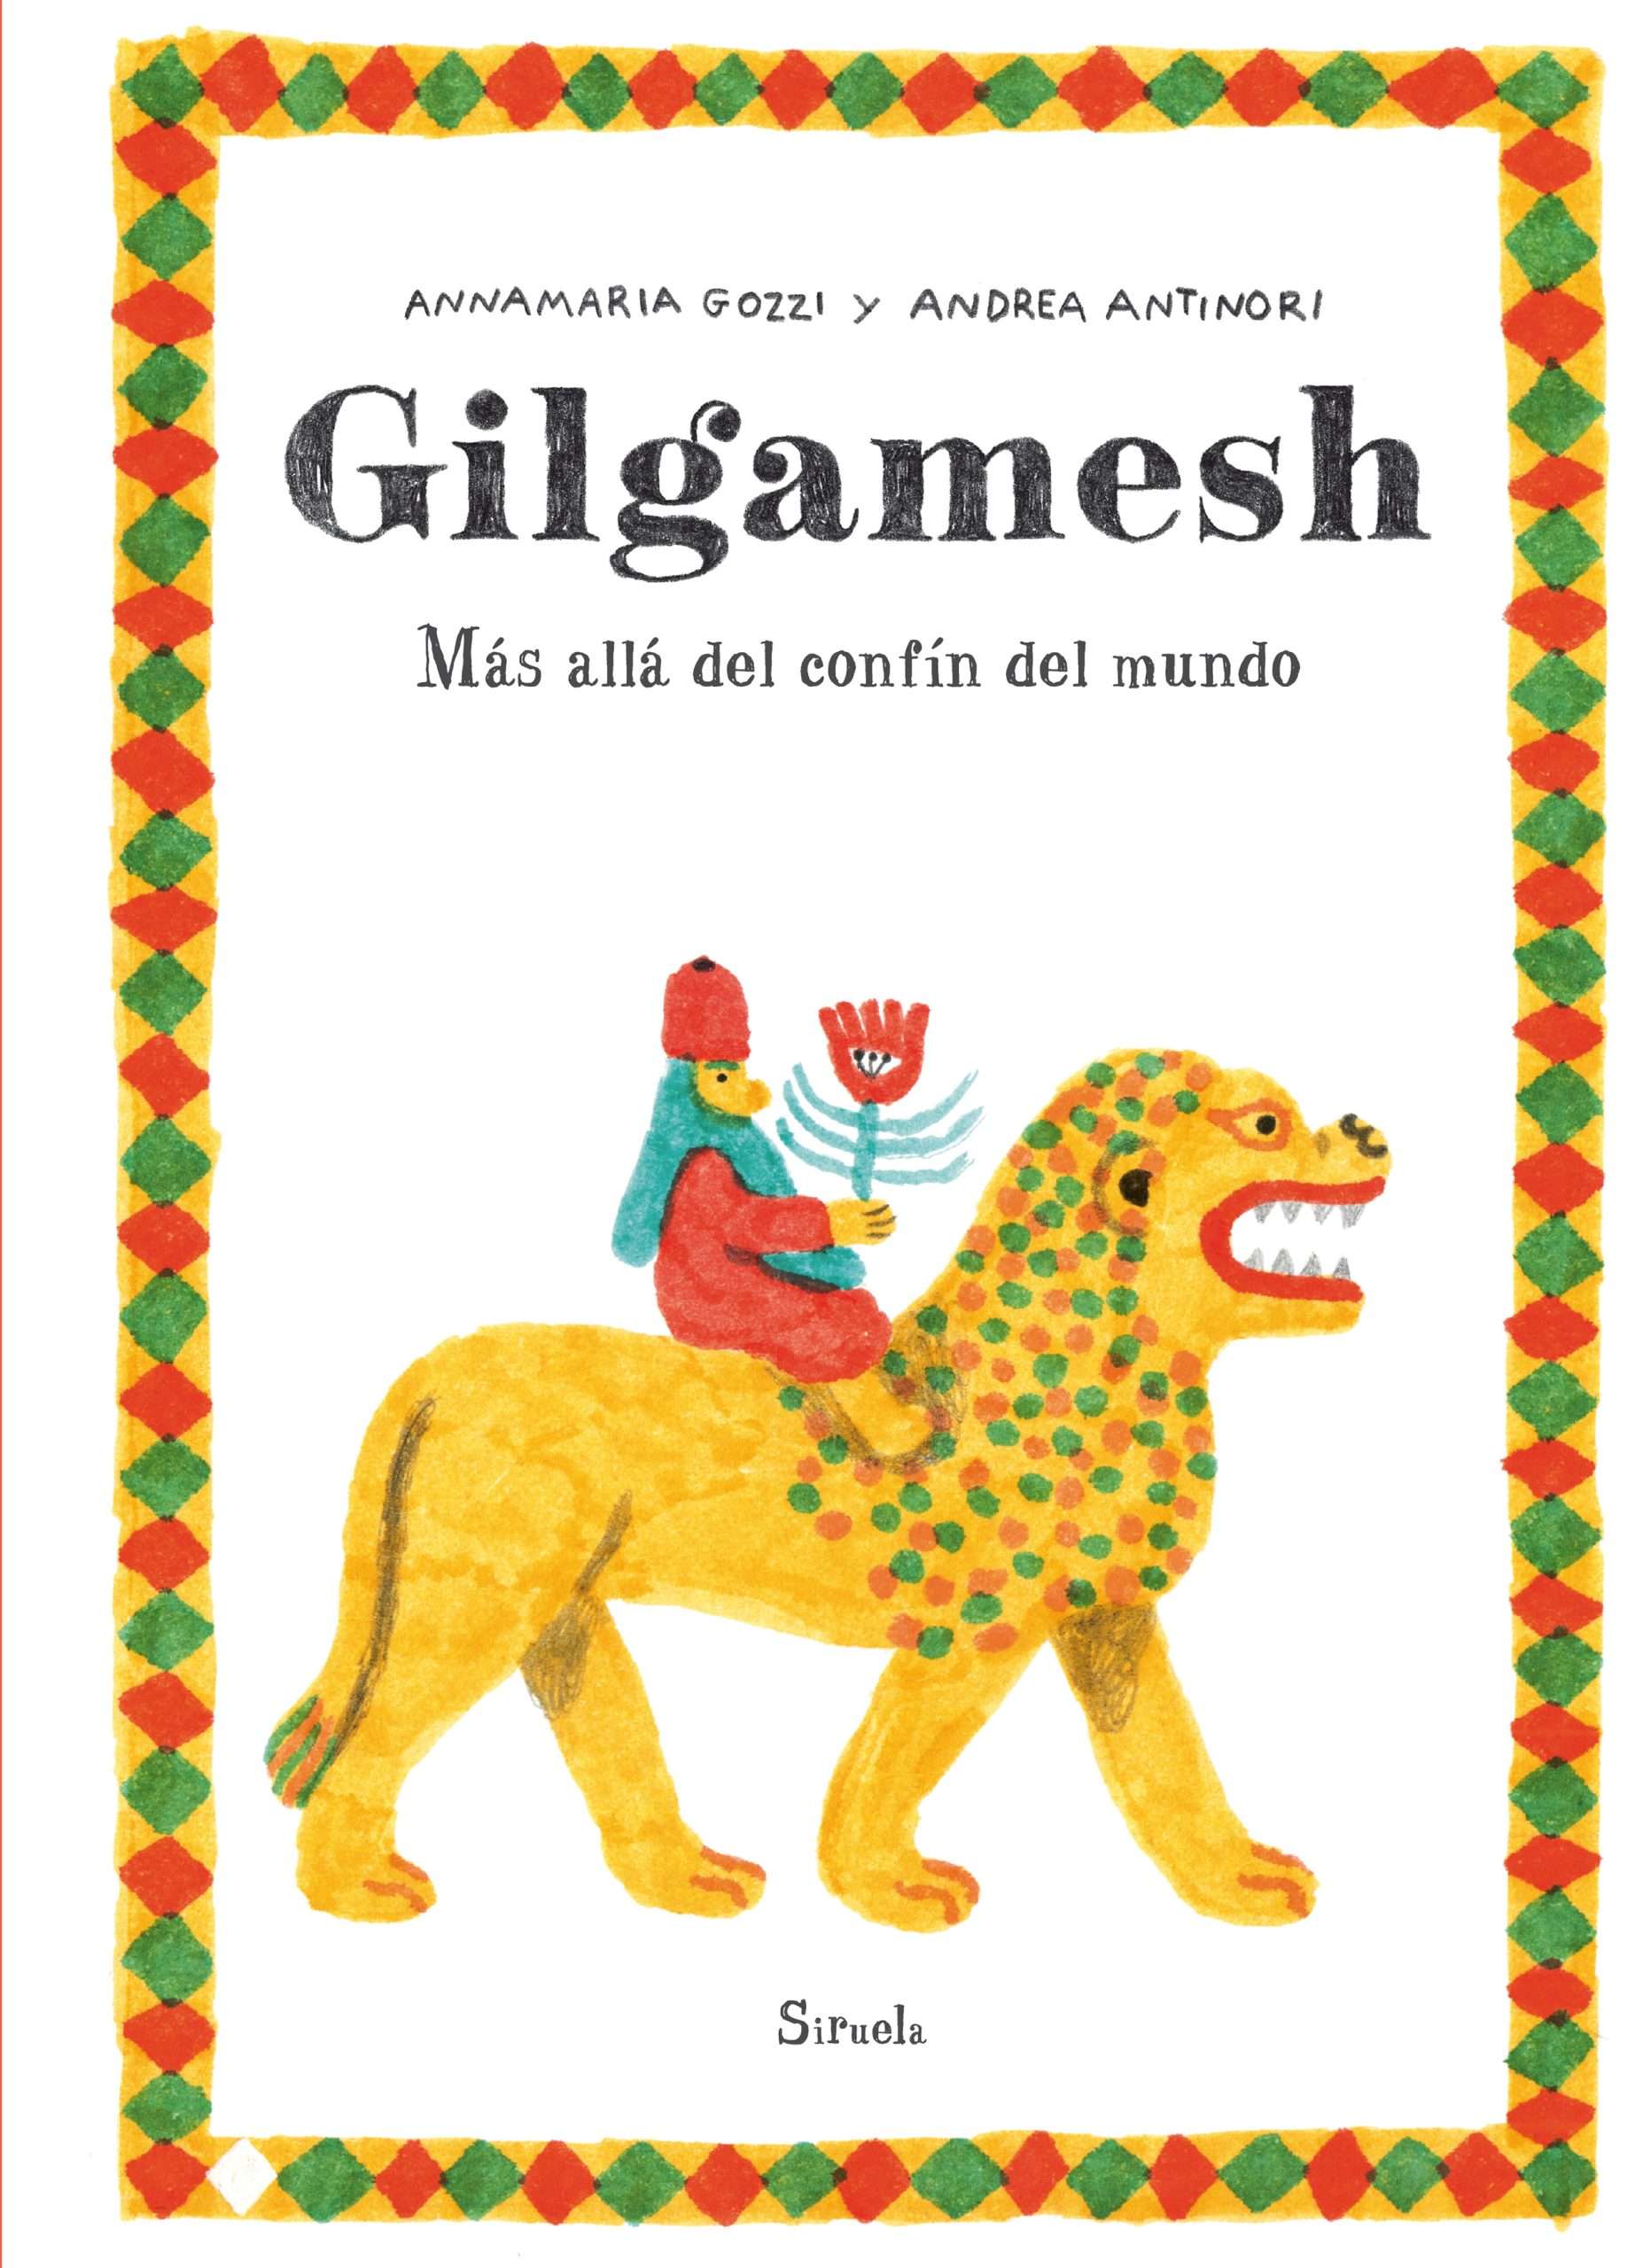 Gilgamesh. Más allá del confín del mundo, de Andrea Antinori y Annamaria Gozzi. Siruela